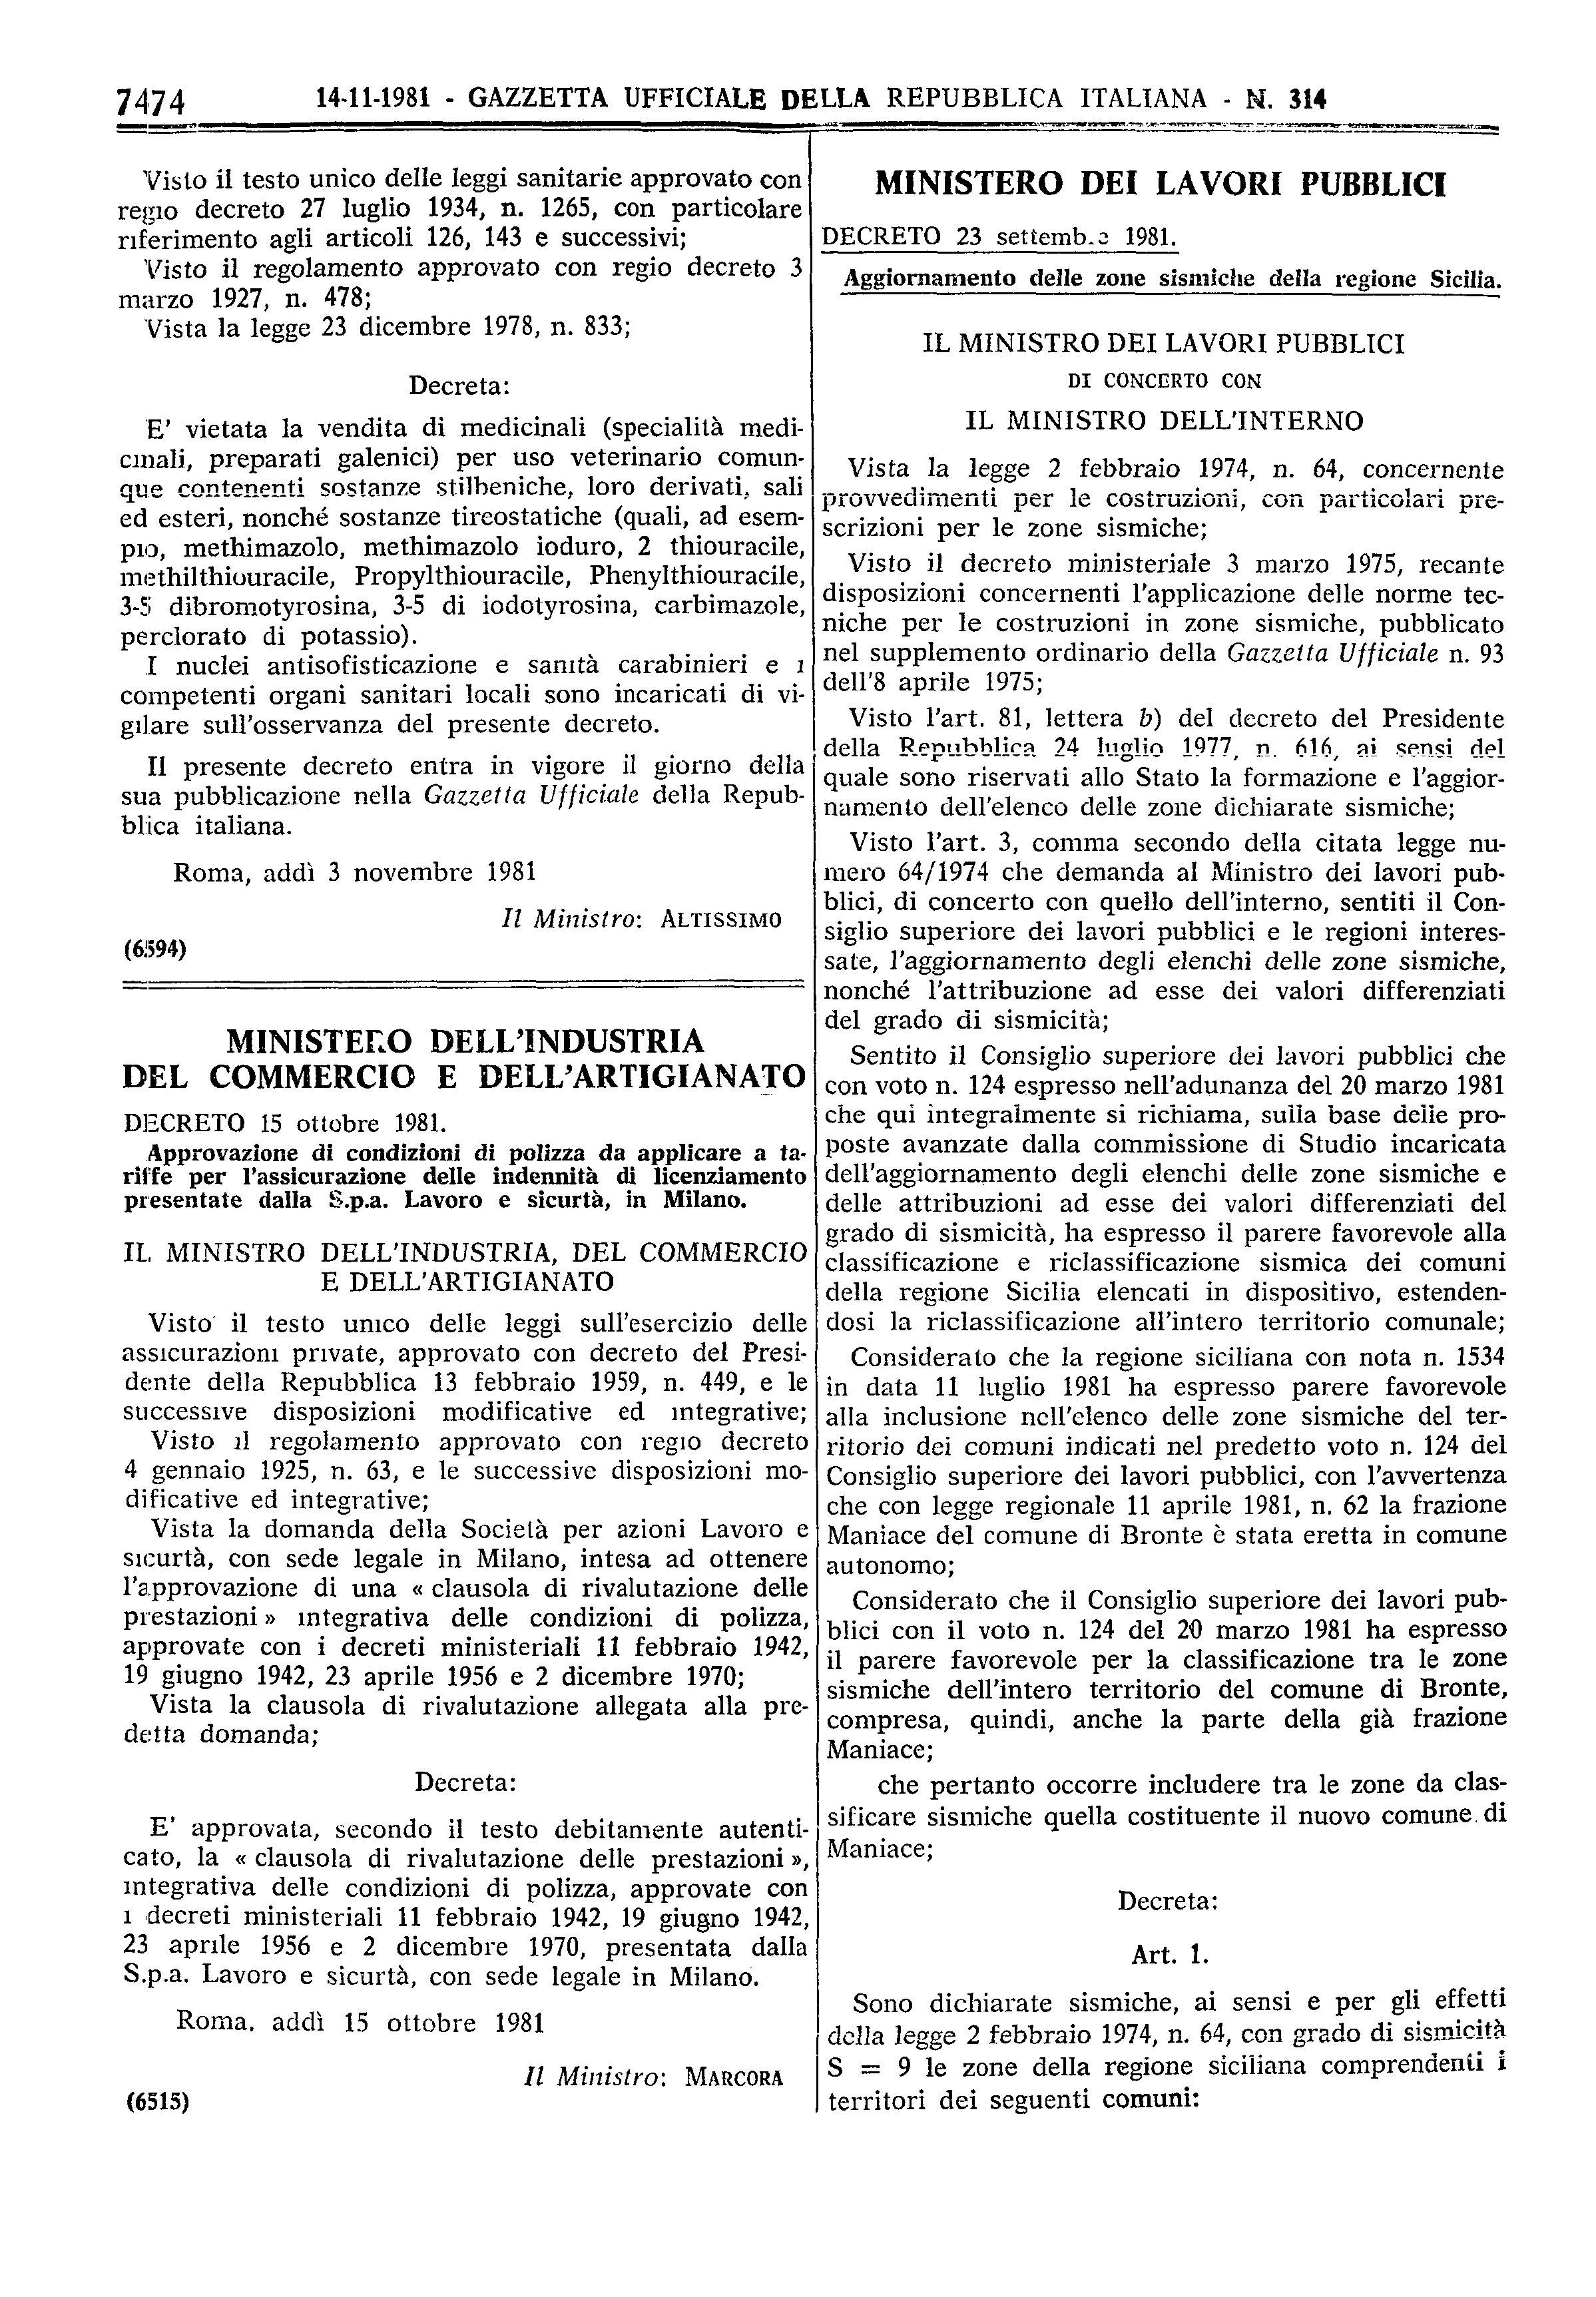 Gazzetta Ufficiale N 314 14-novembre-1981 -Ustica-zona-sismica-